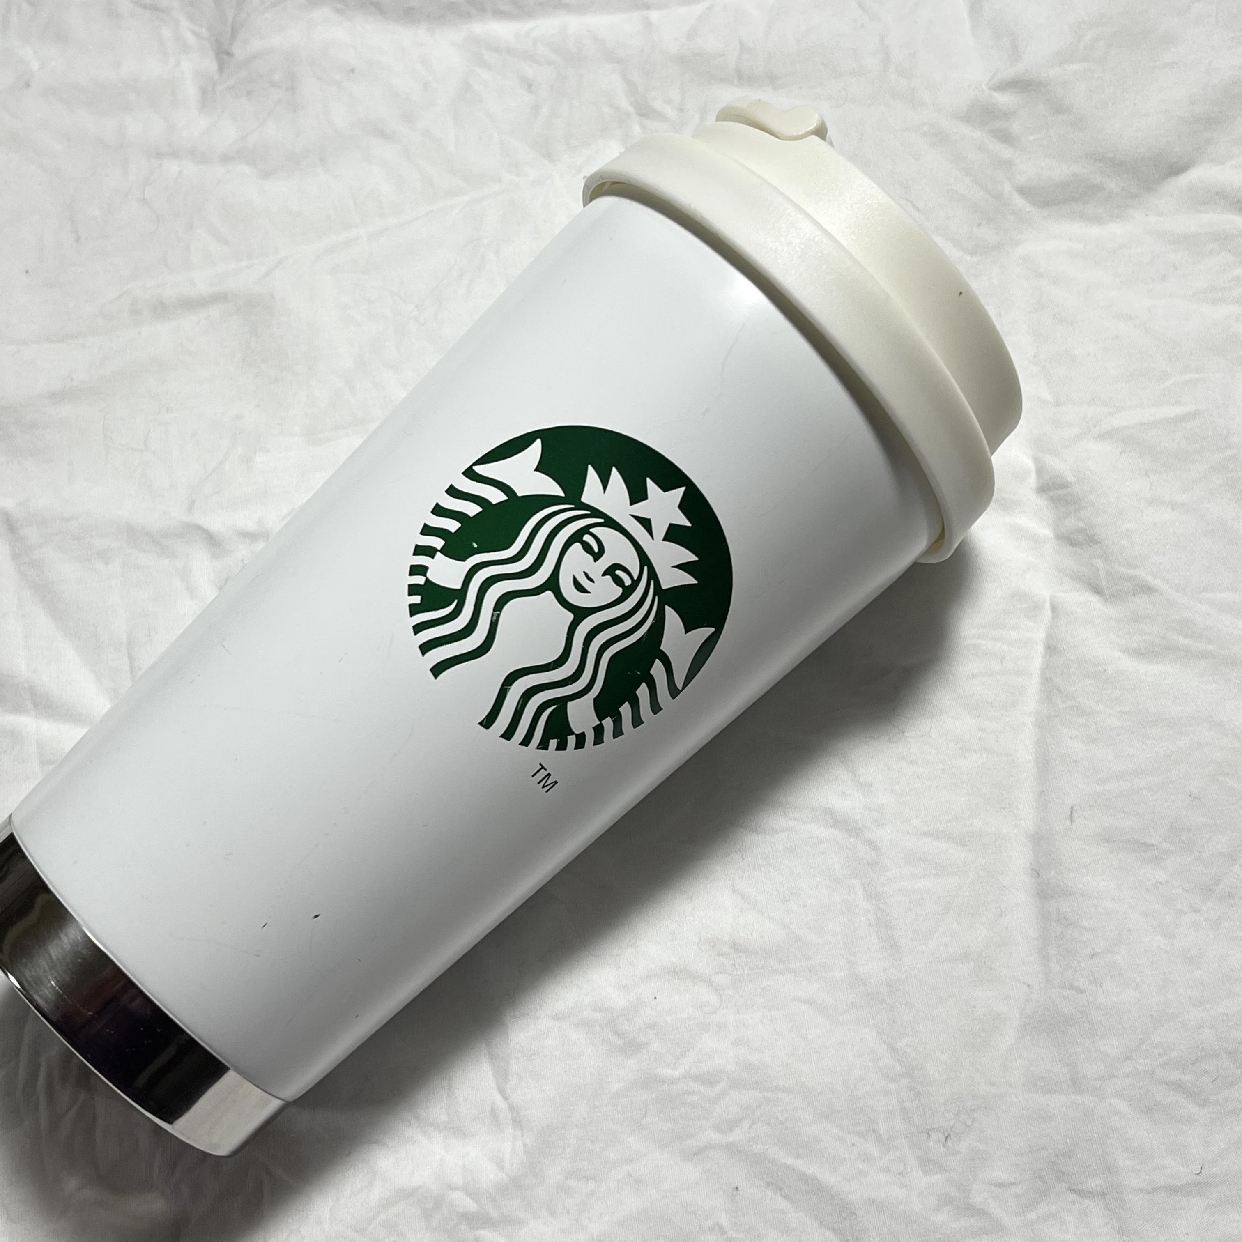 Starbucks(スターバックス) ステンレス ToGoロゴタンブラーマットホワイトを使ったmaoさんのクチコミ画像1